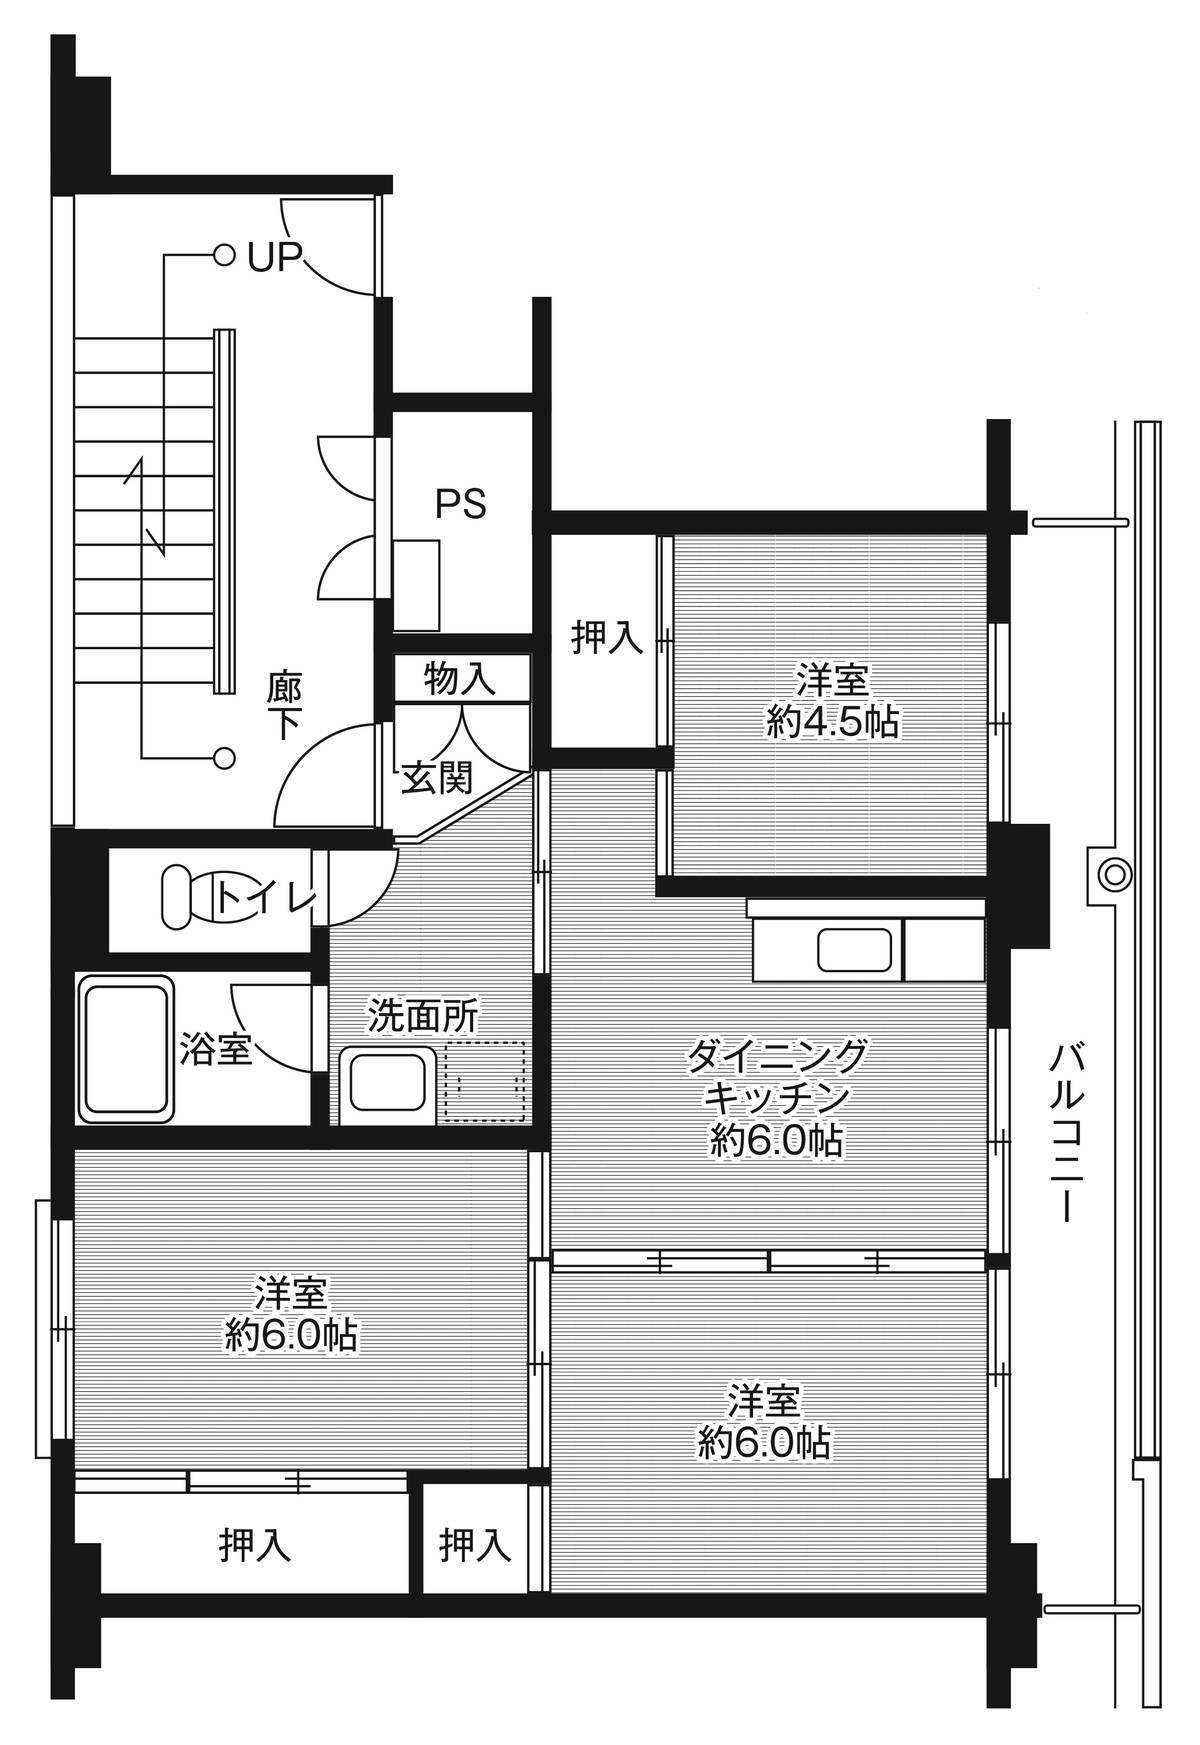 Sơ đồ phòng 2LDK của Village House Houjou ở Tsukuba-shi